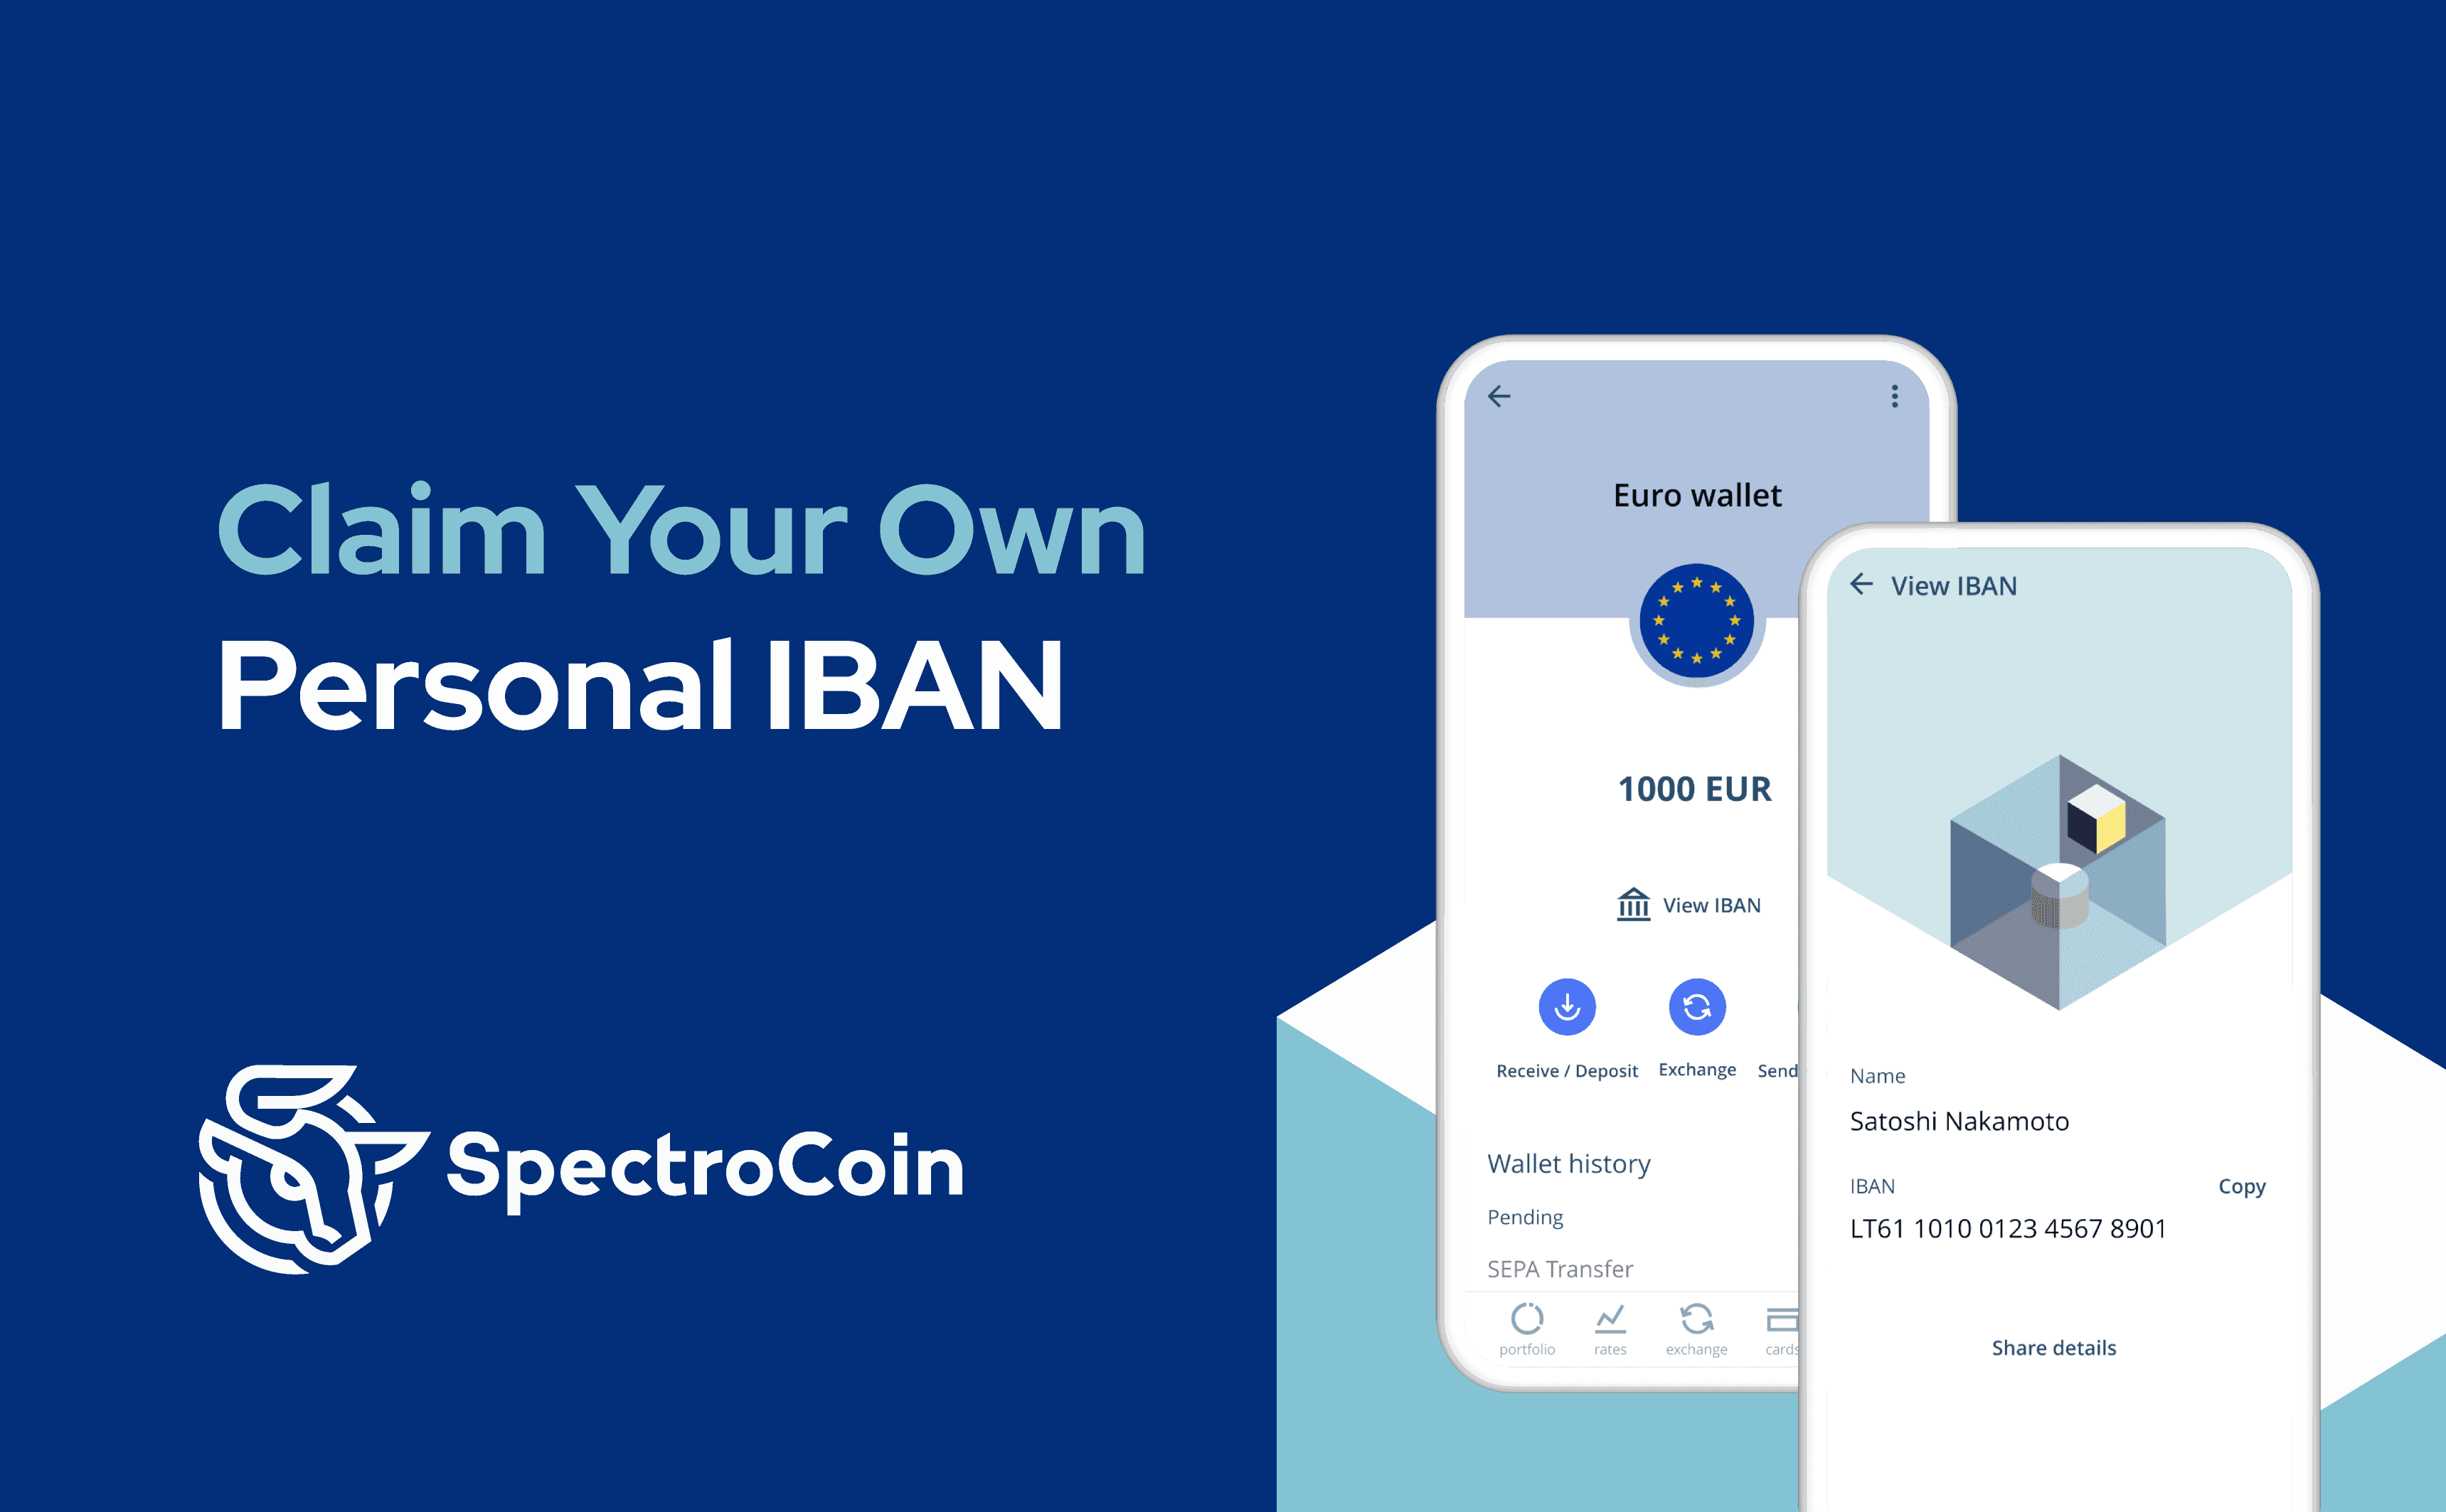 Nuo šiol vartotojai gali gauti savo IBAN paskyrą „SpectroCoin“ platformoje.